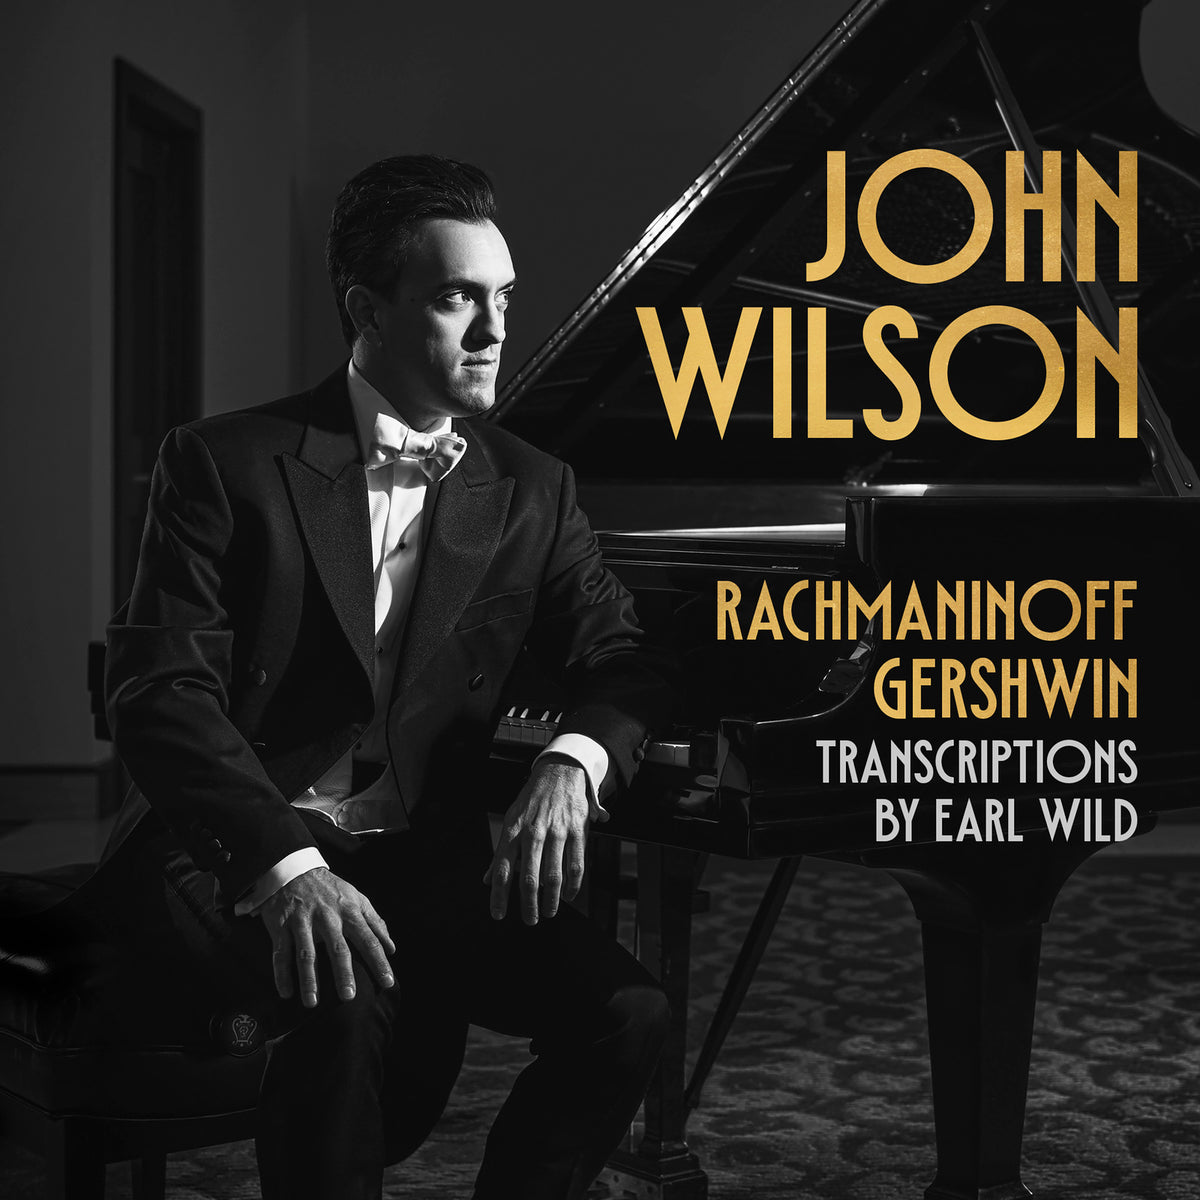 John Wilson - Rachmaninoff &amp; Gershwin transcriptions by Earl Wild